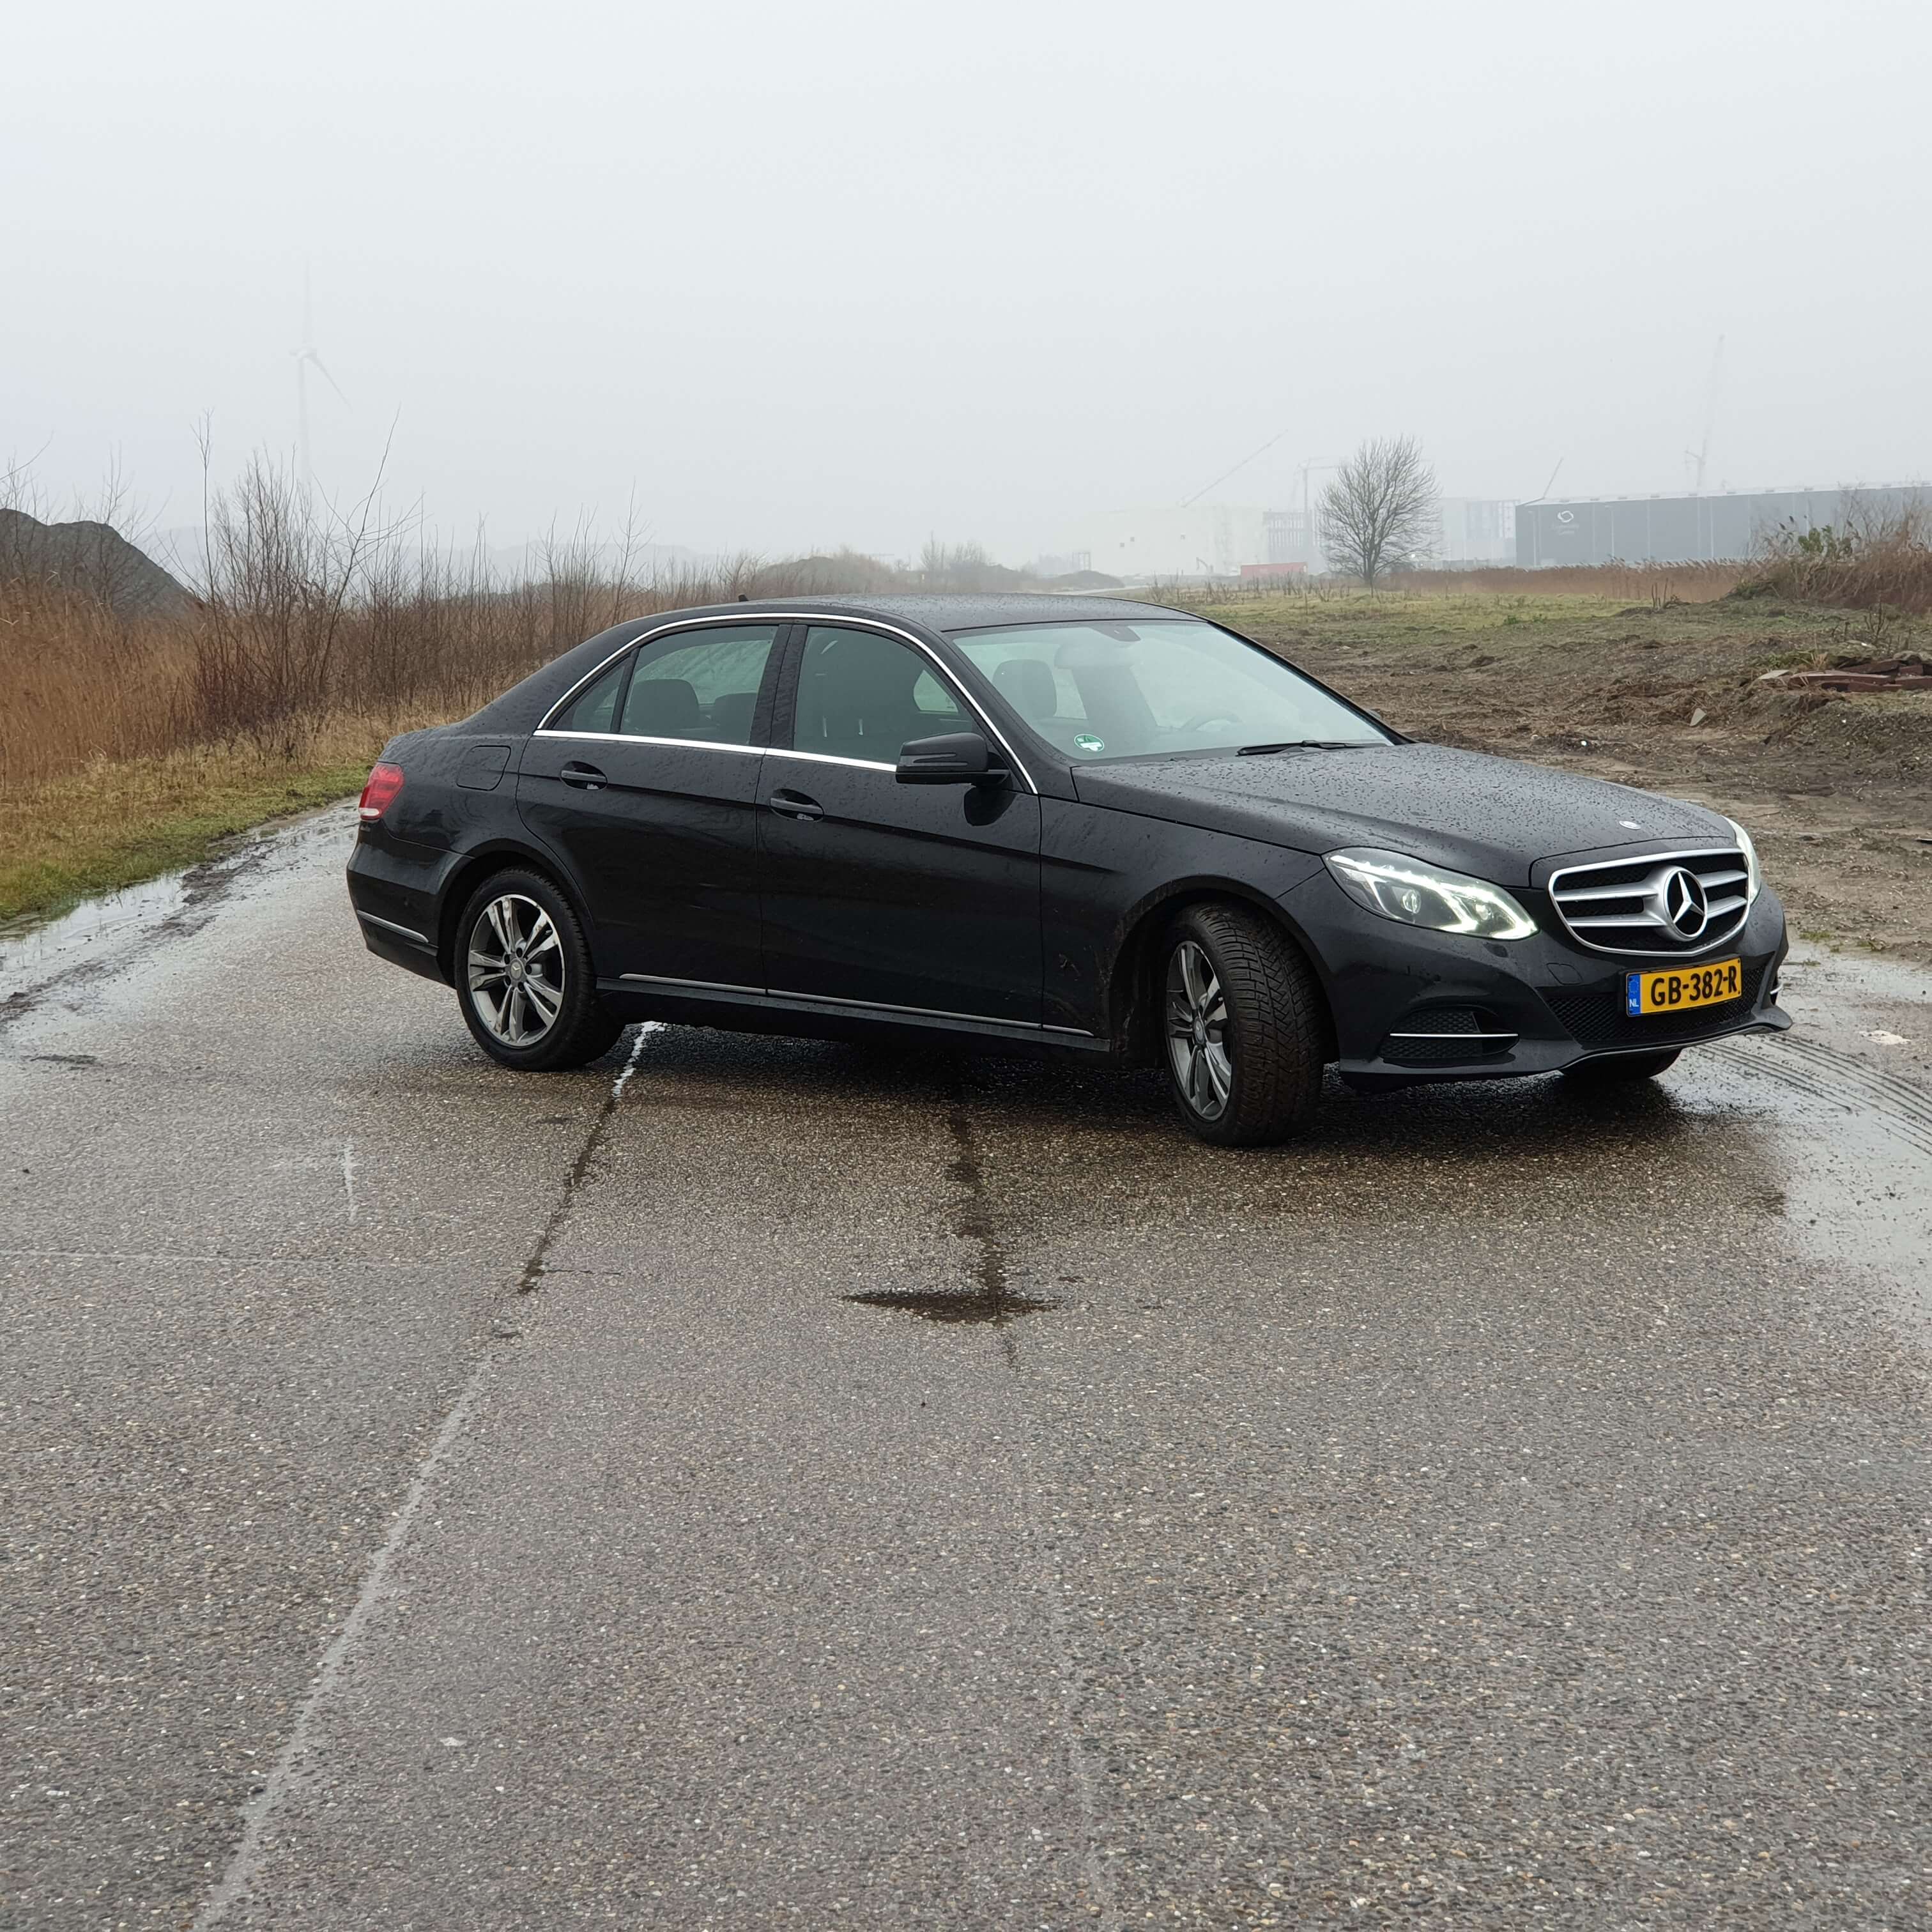 Huur een 3 seater Auto met chauffeur (Mercedes Benz E Klasse 2021) van Direct Vip Service in Amsterdam 